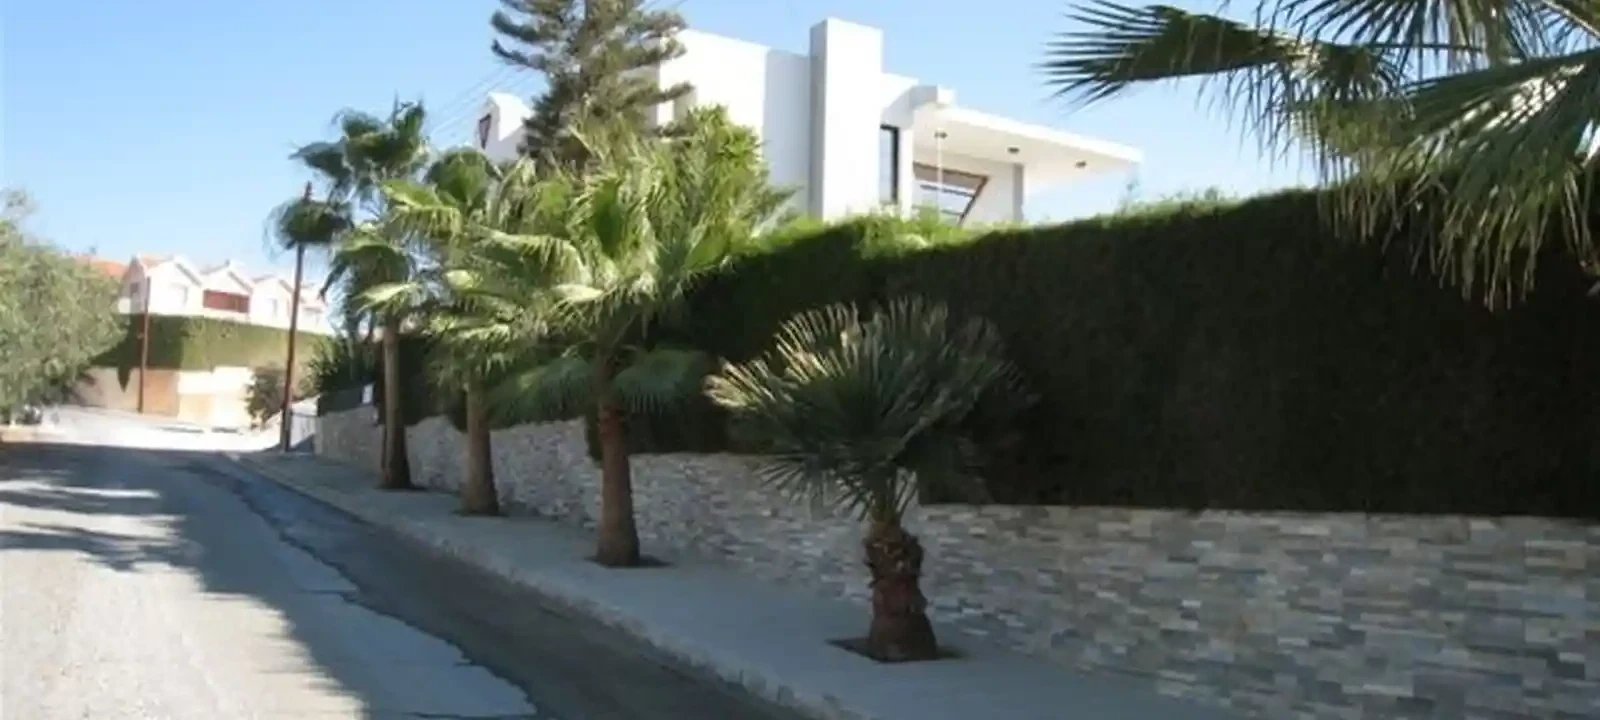 4-bedroom villa to rent €3.800, image 1